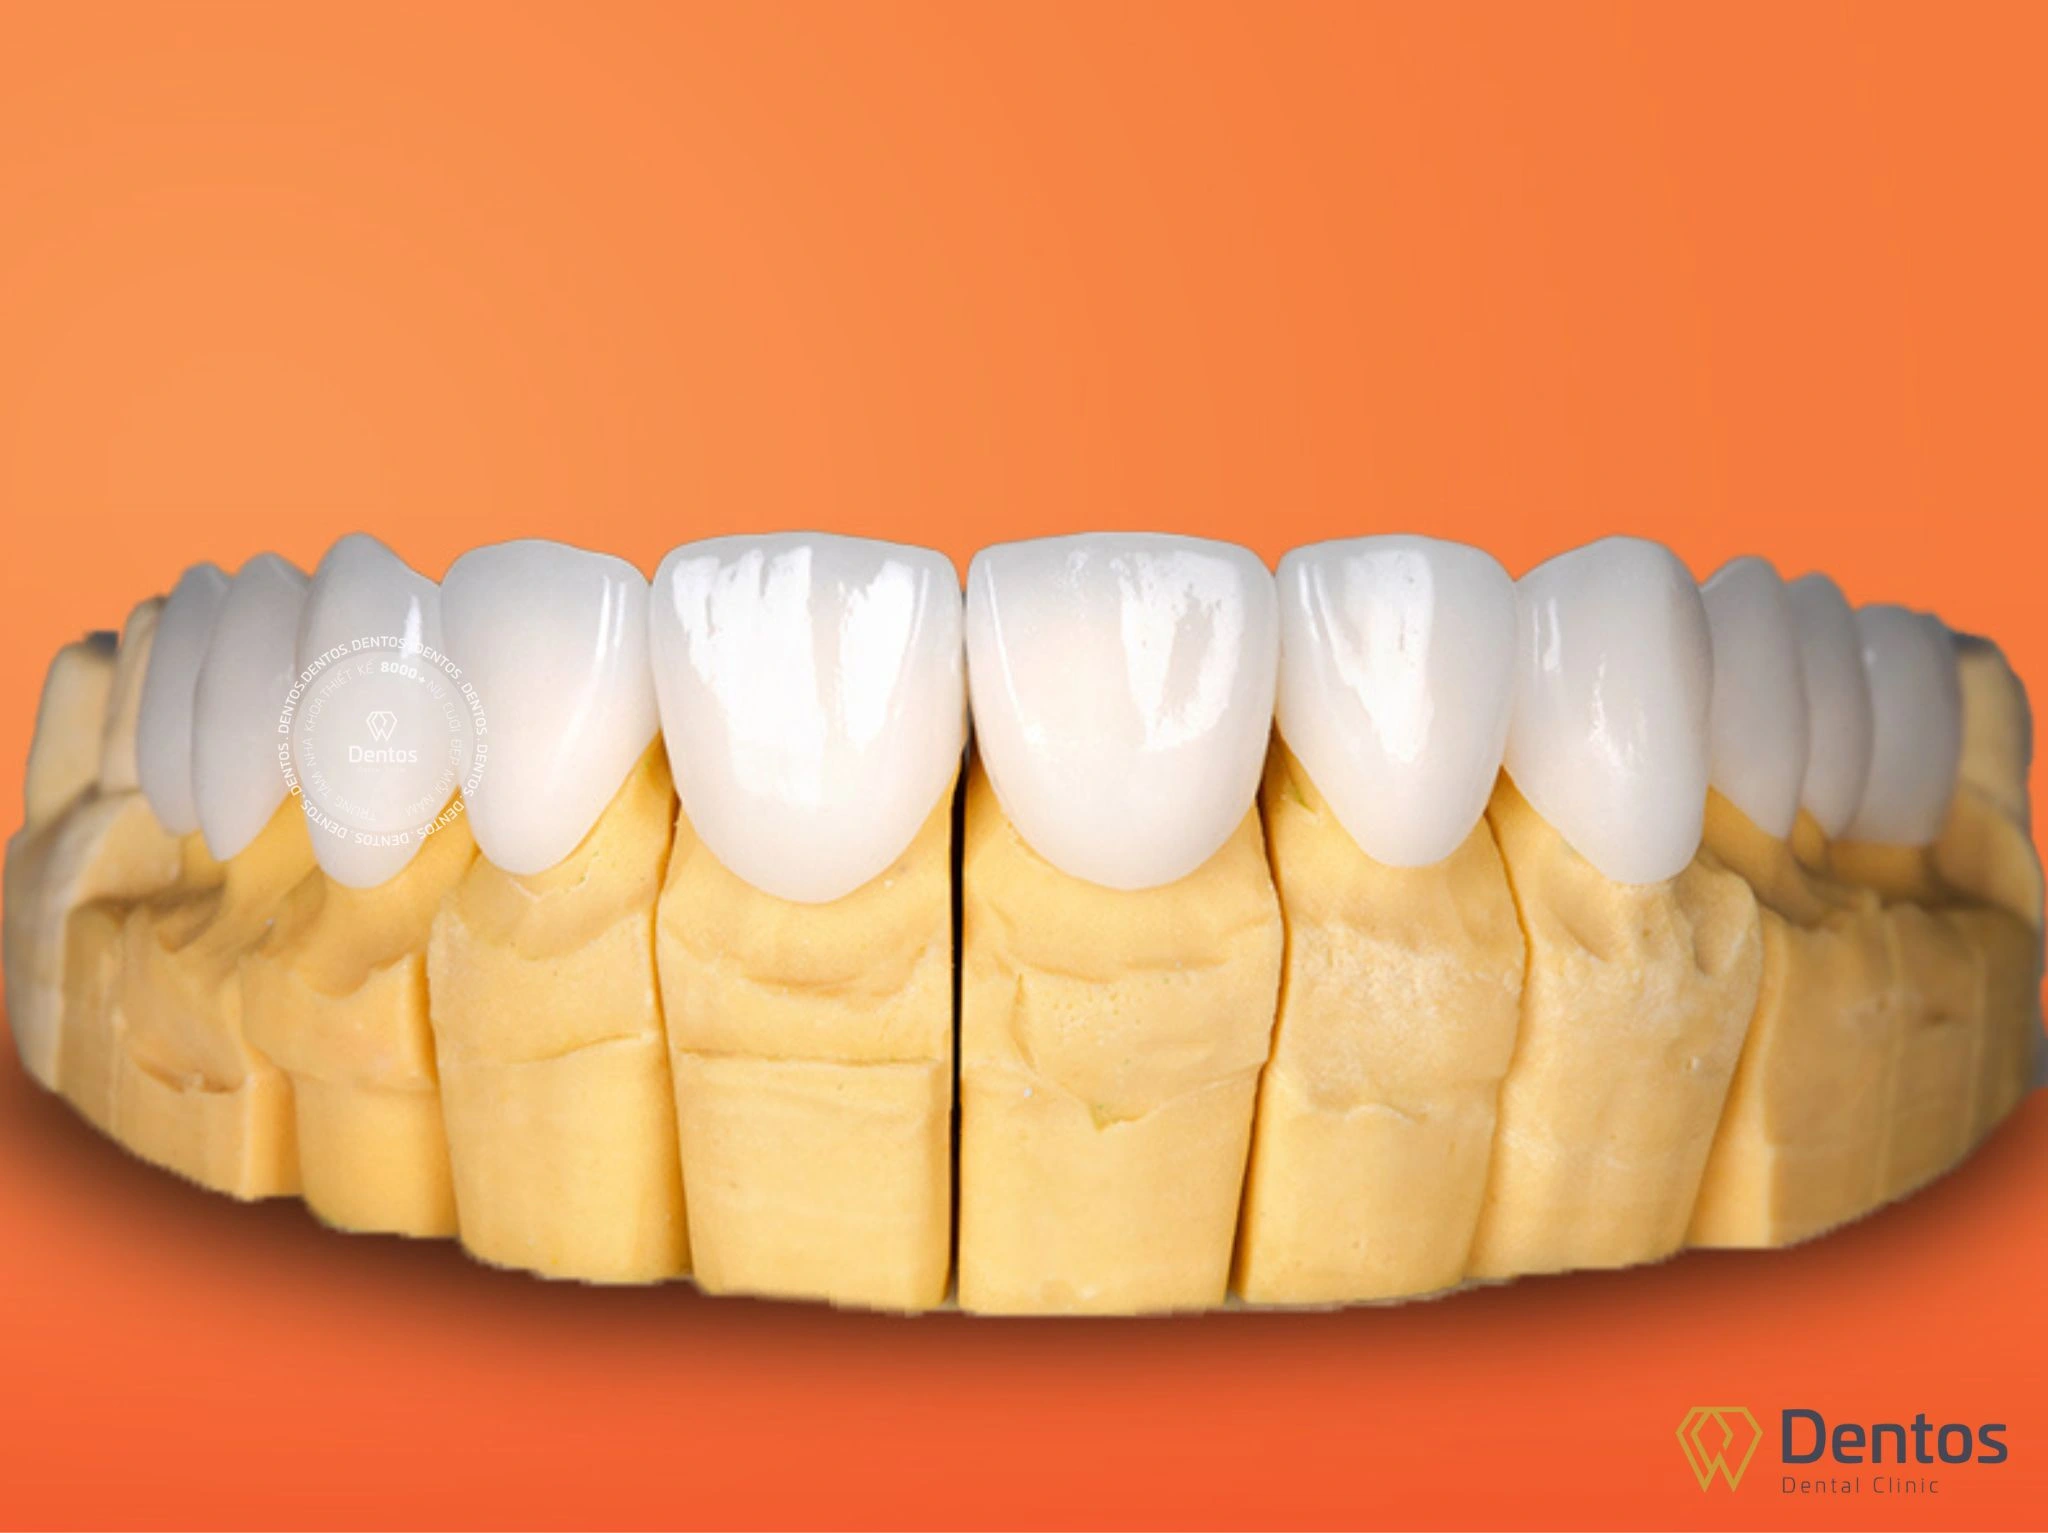 Giá bọc răng sứ nguyên hàm khá cao so với phương pháp tẩy trắng hay trám răng thông thường